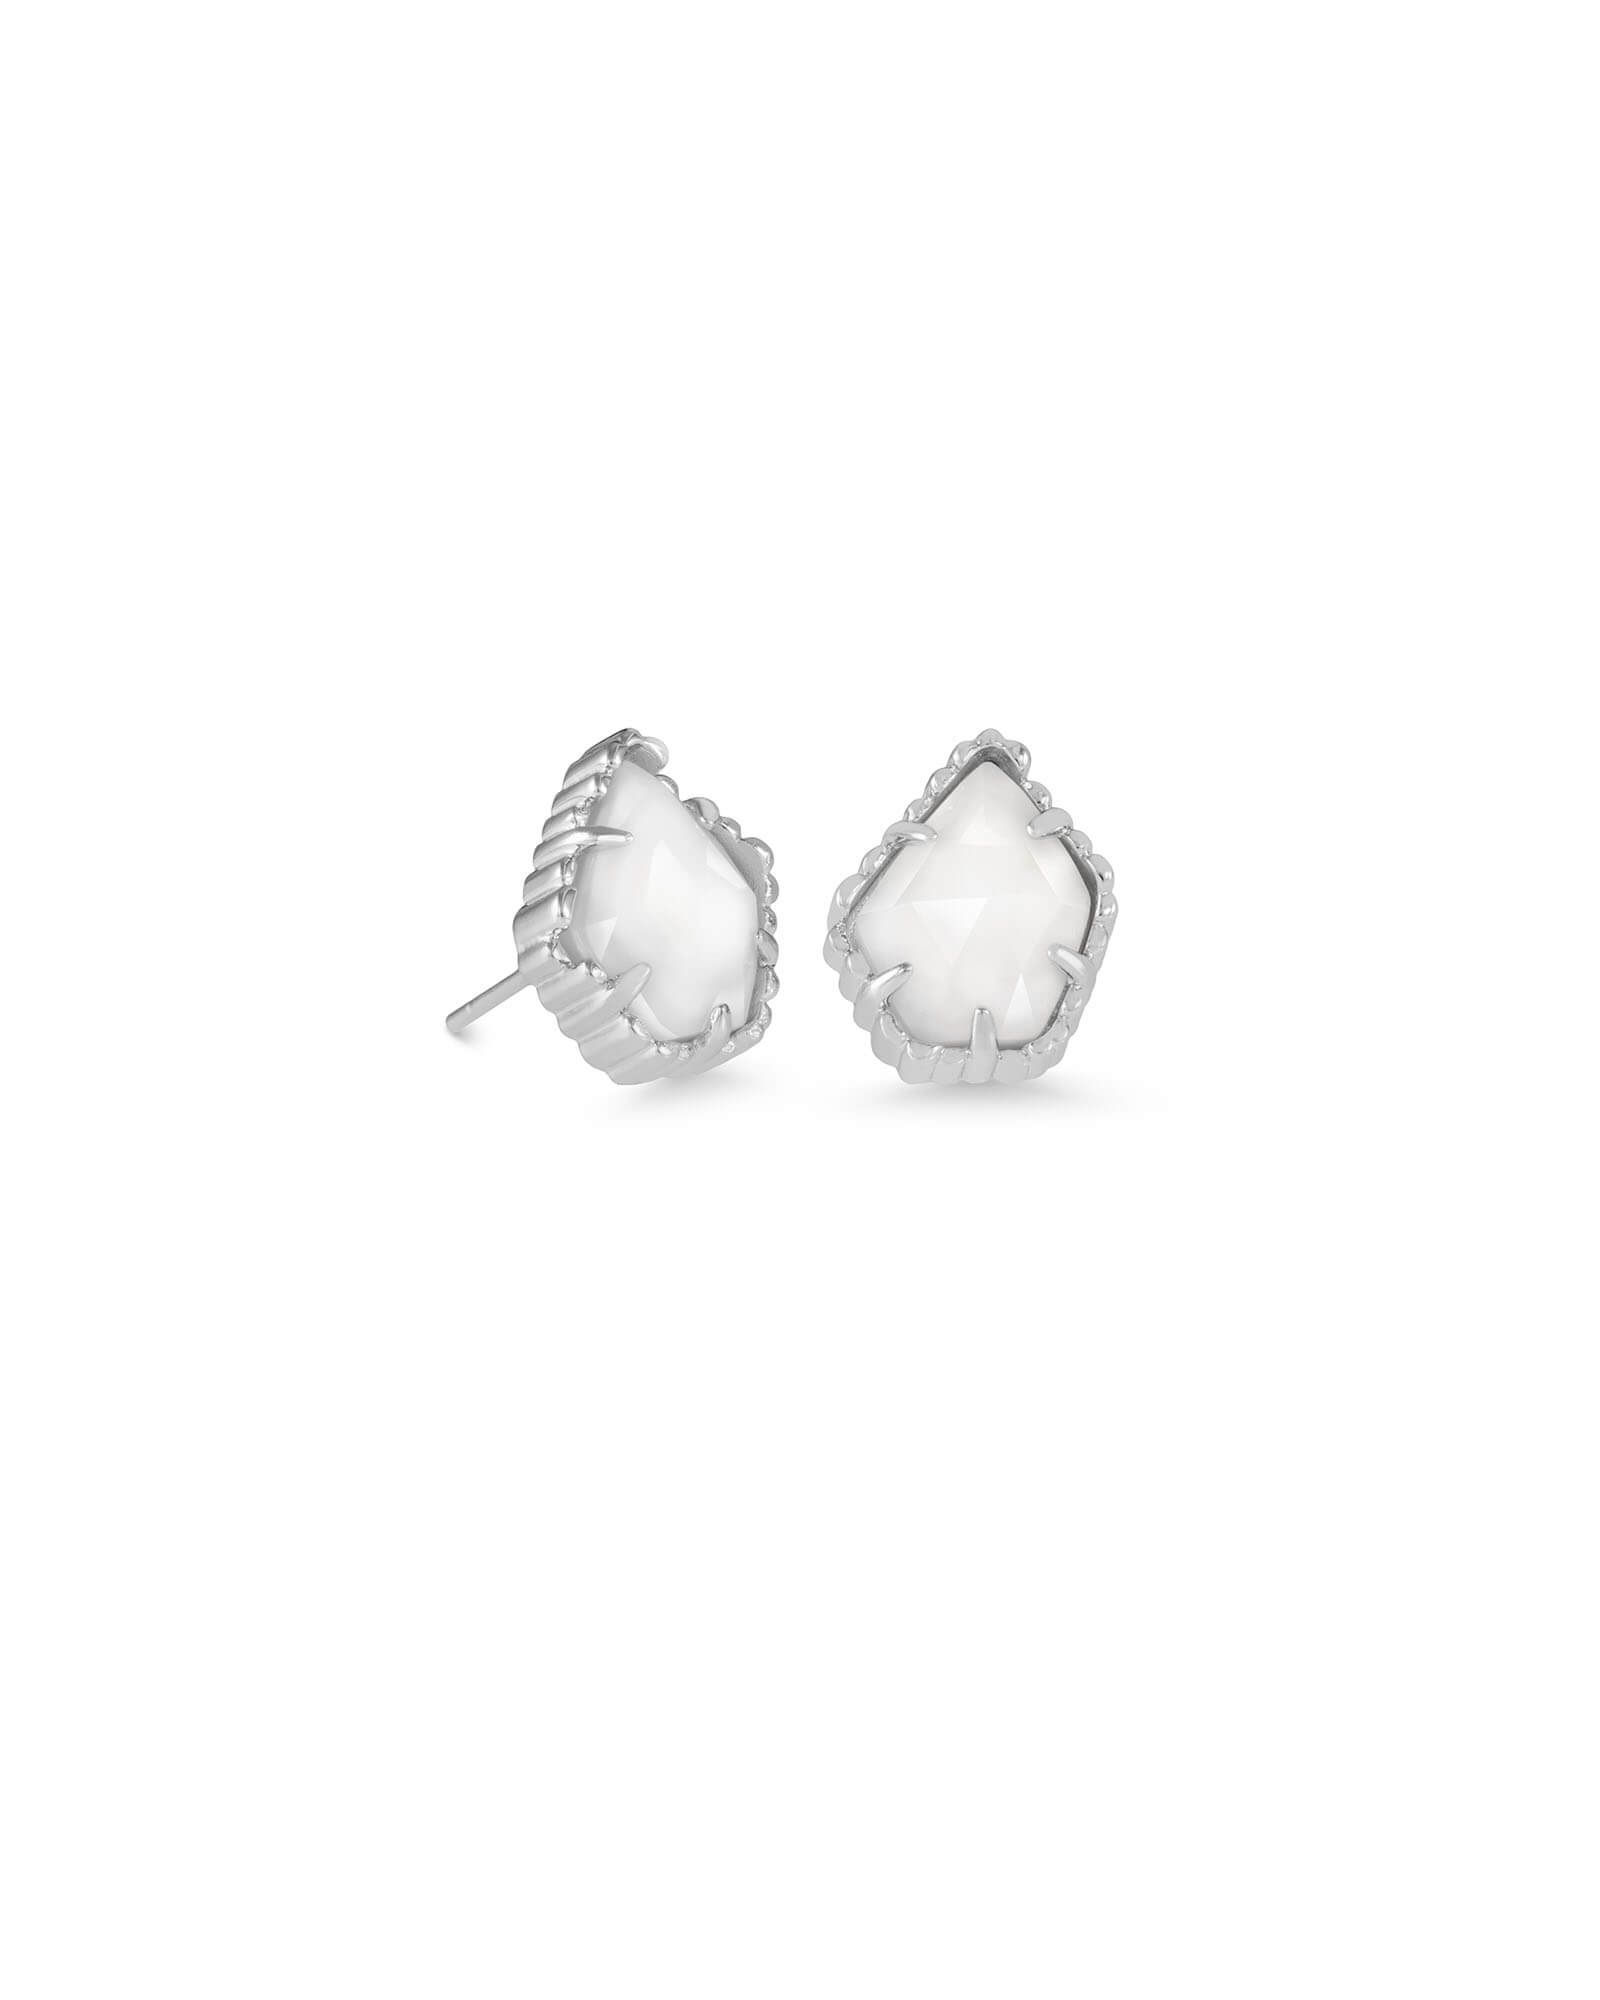 Tessa Silver Stud Earrings in White Pearl | Kendra Scott